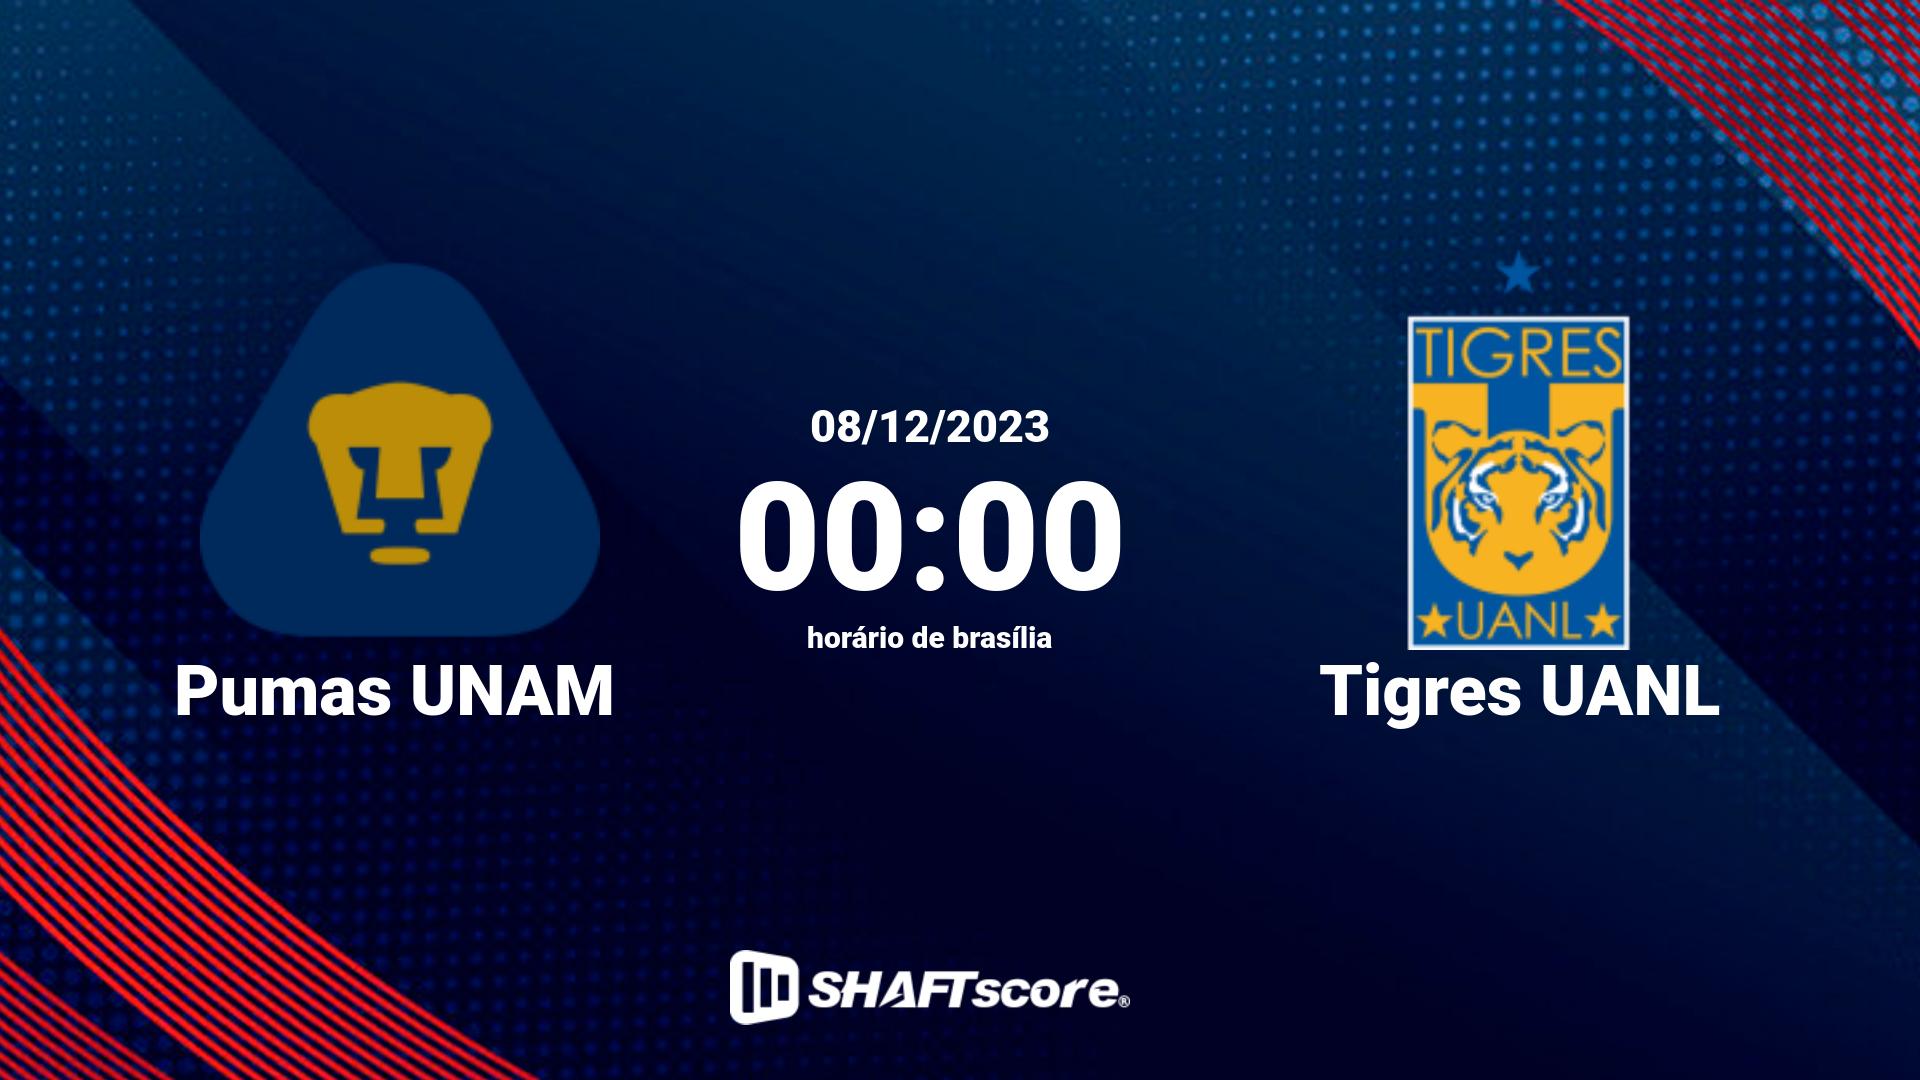 Estatísticas do jogo Pumas UNAM vs Tigres UANL 08.12 00:00